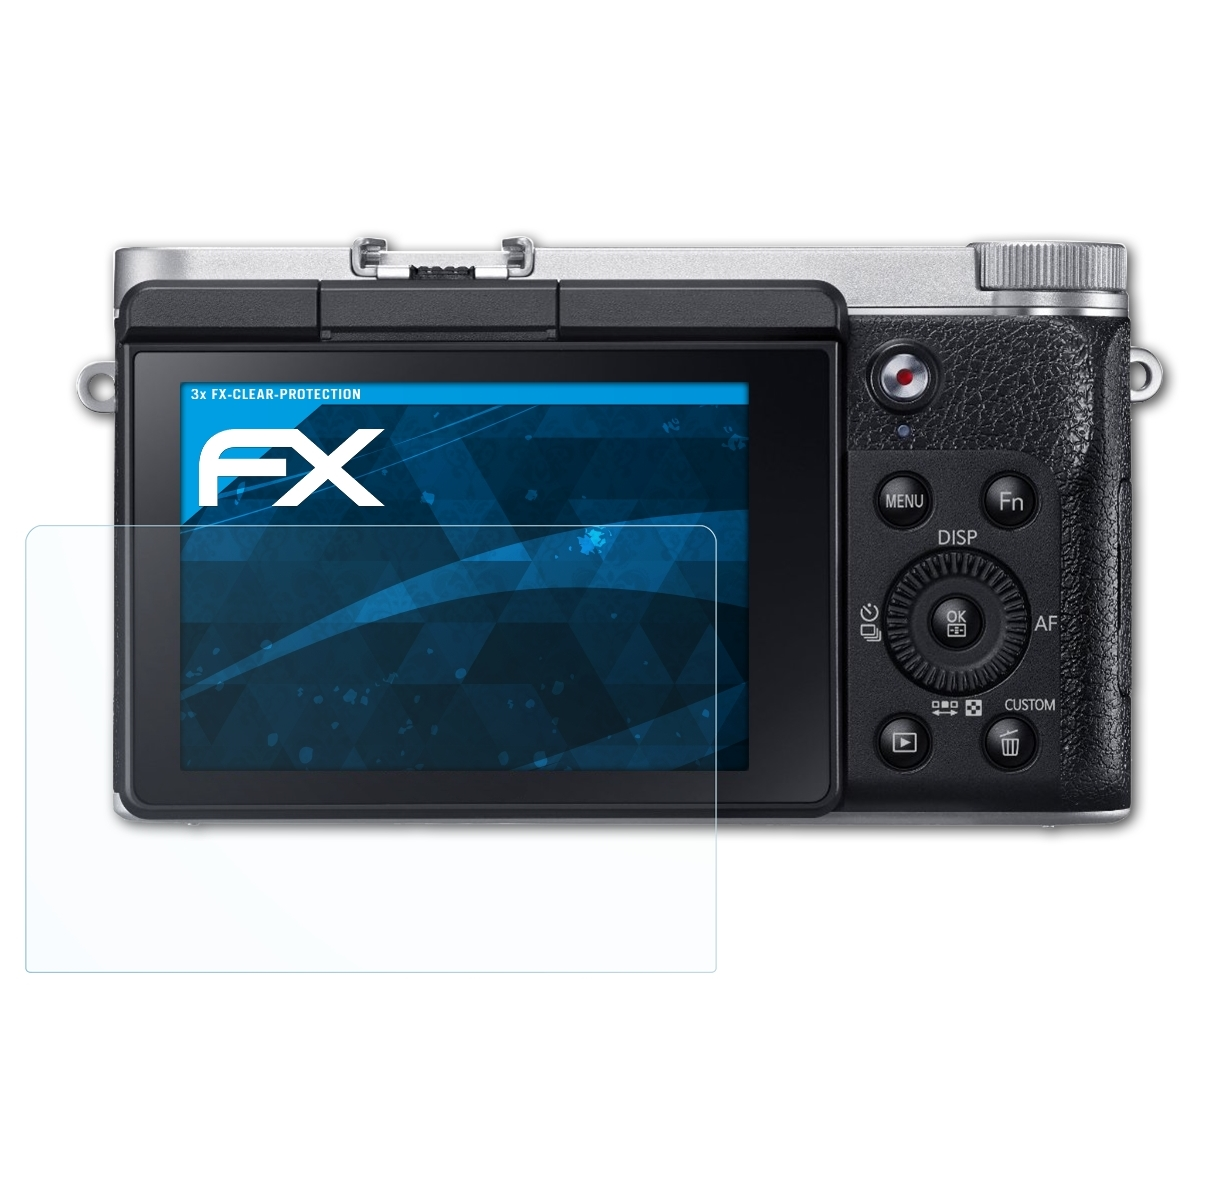 NX3000) Displayschutz(für FX-Clear ATFOLIX 3x Samsung